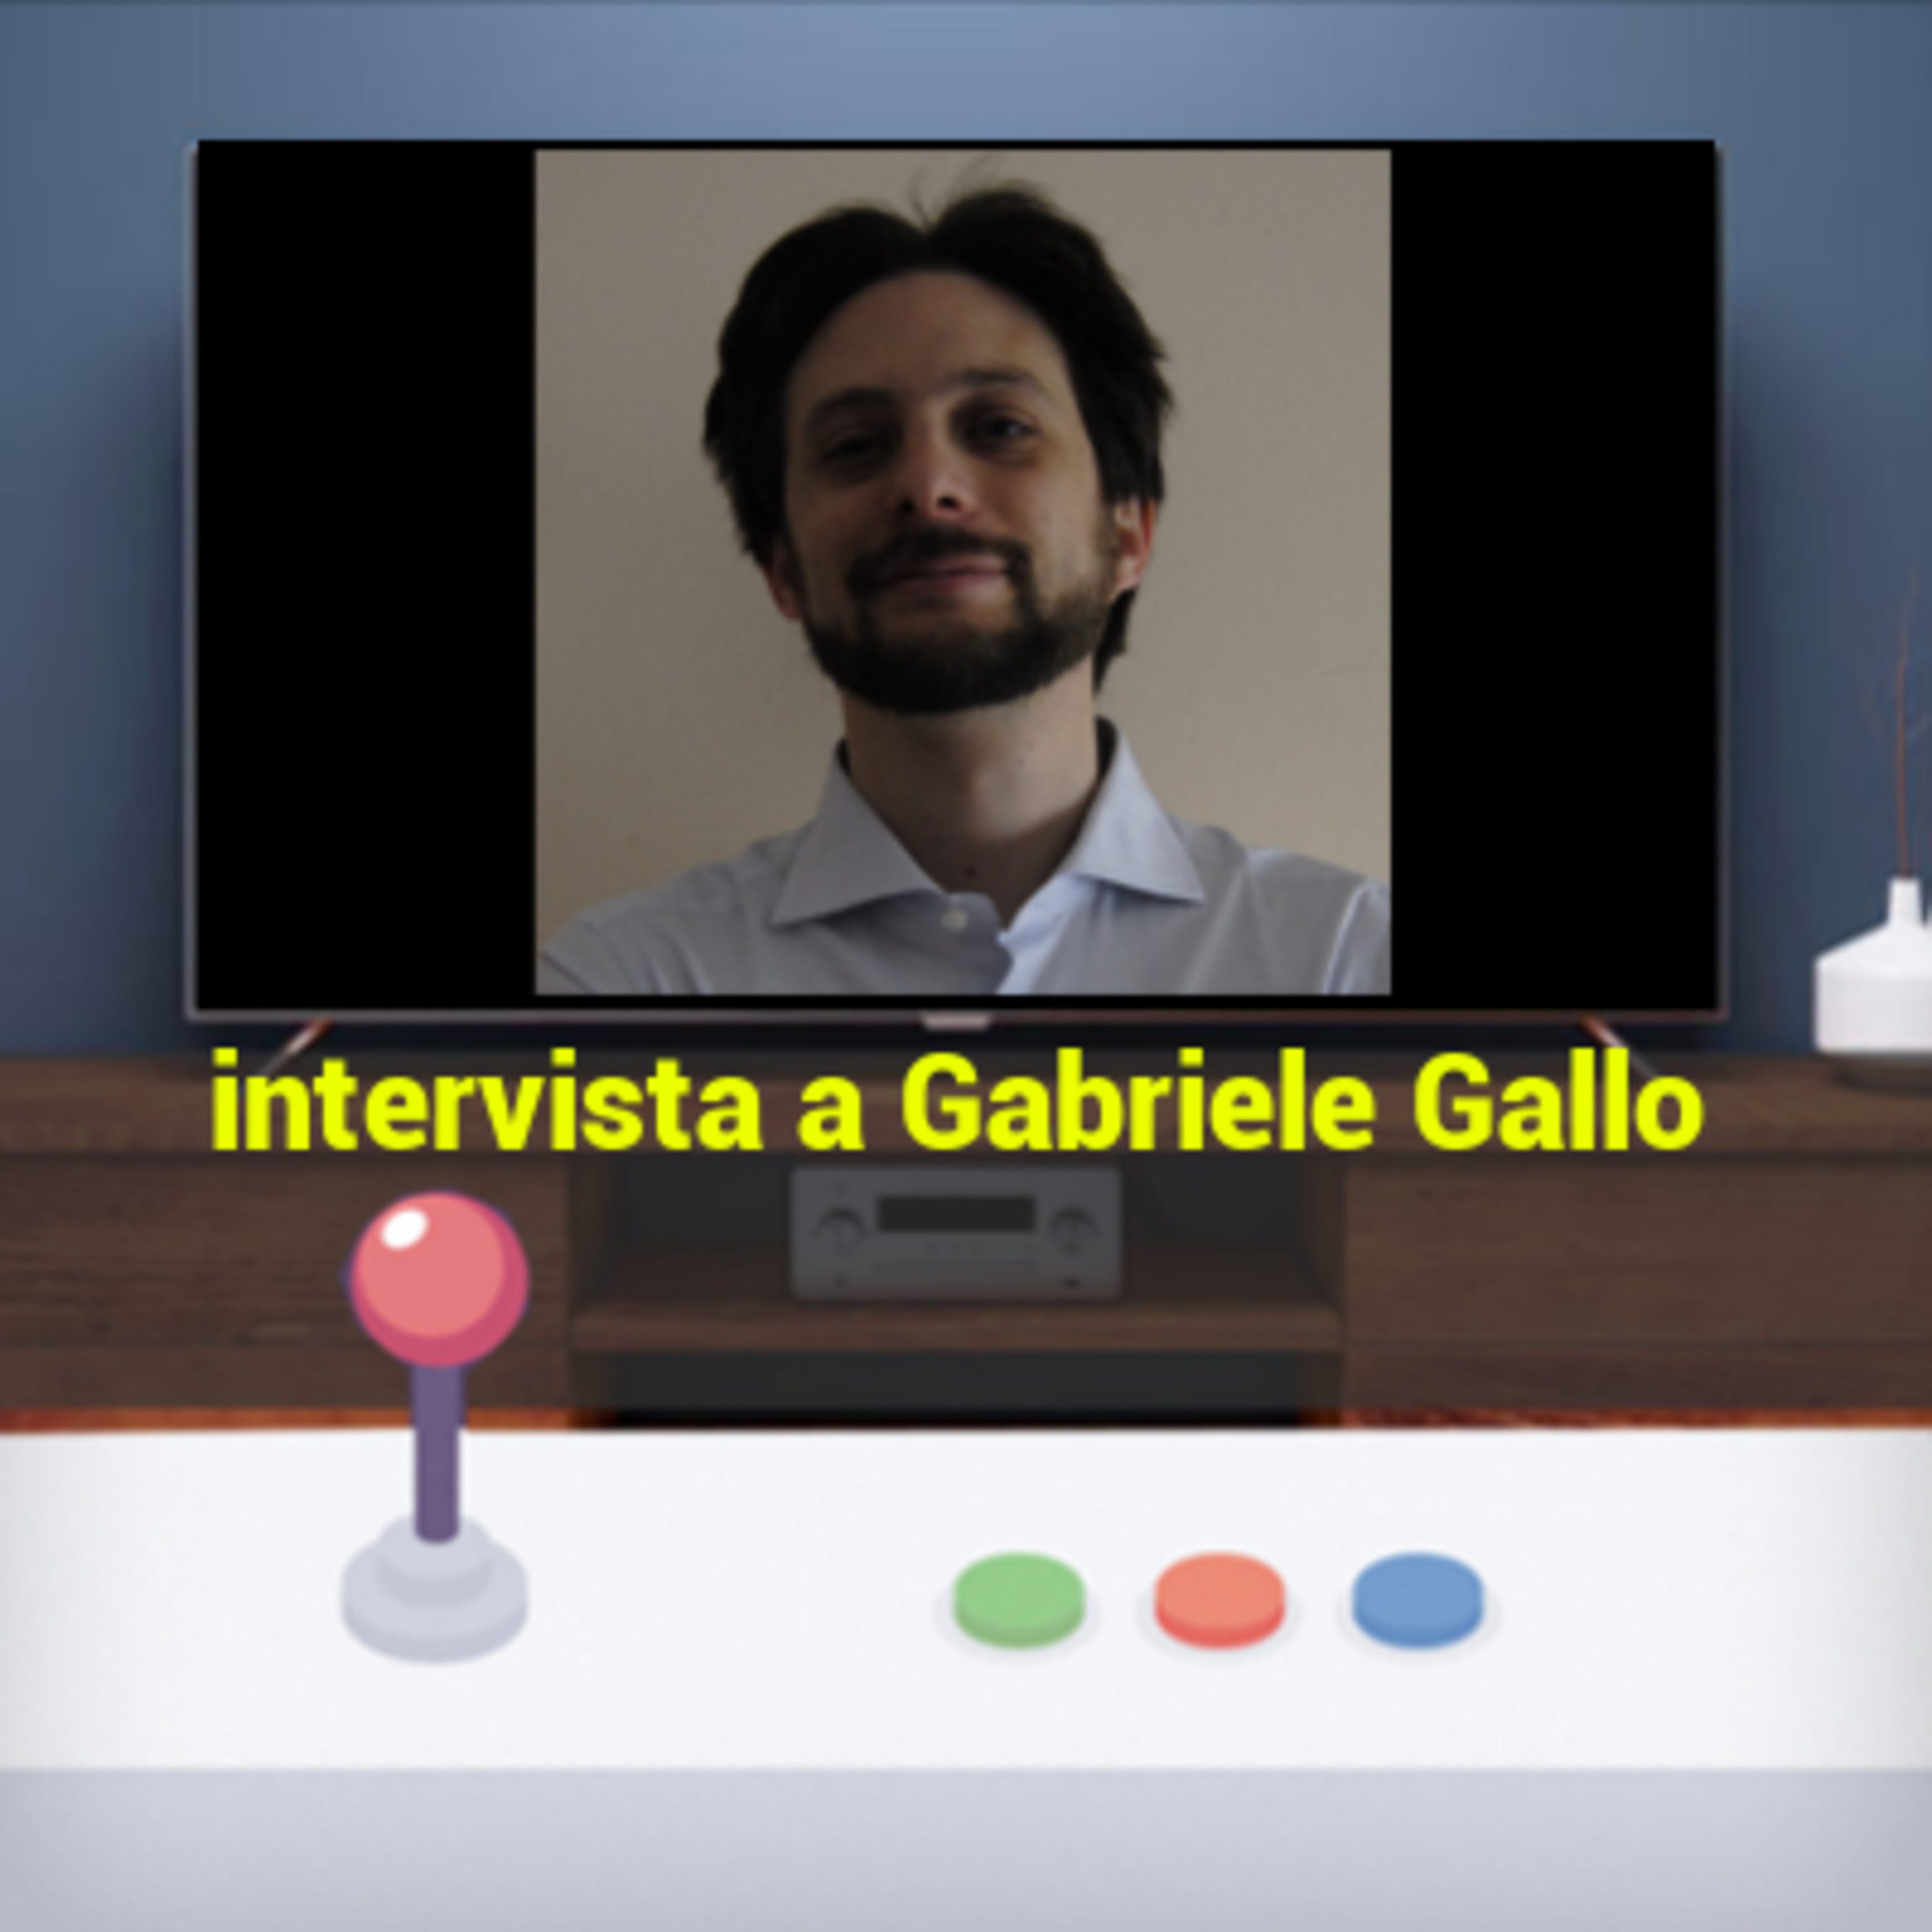 Intervista a Gabriele Gallo